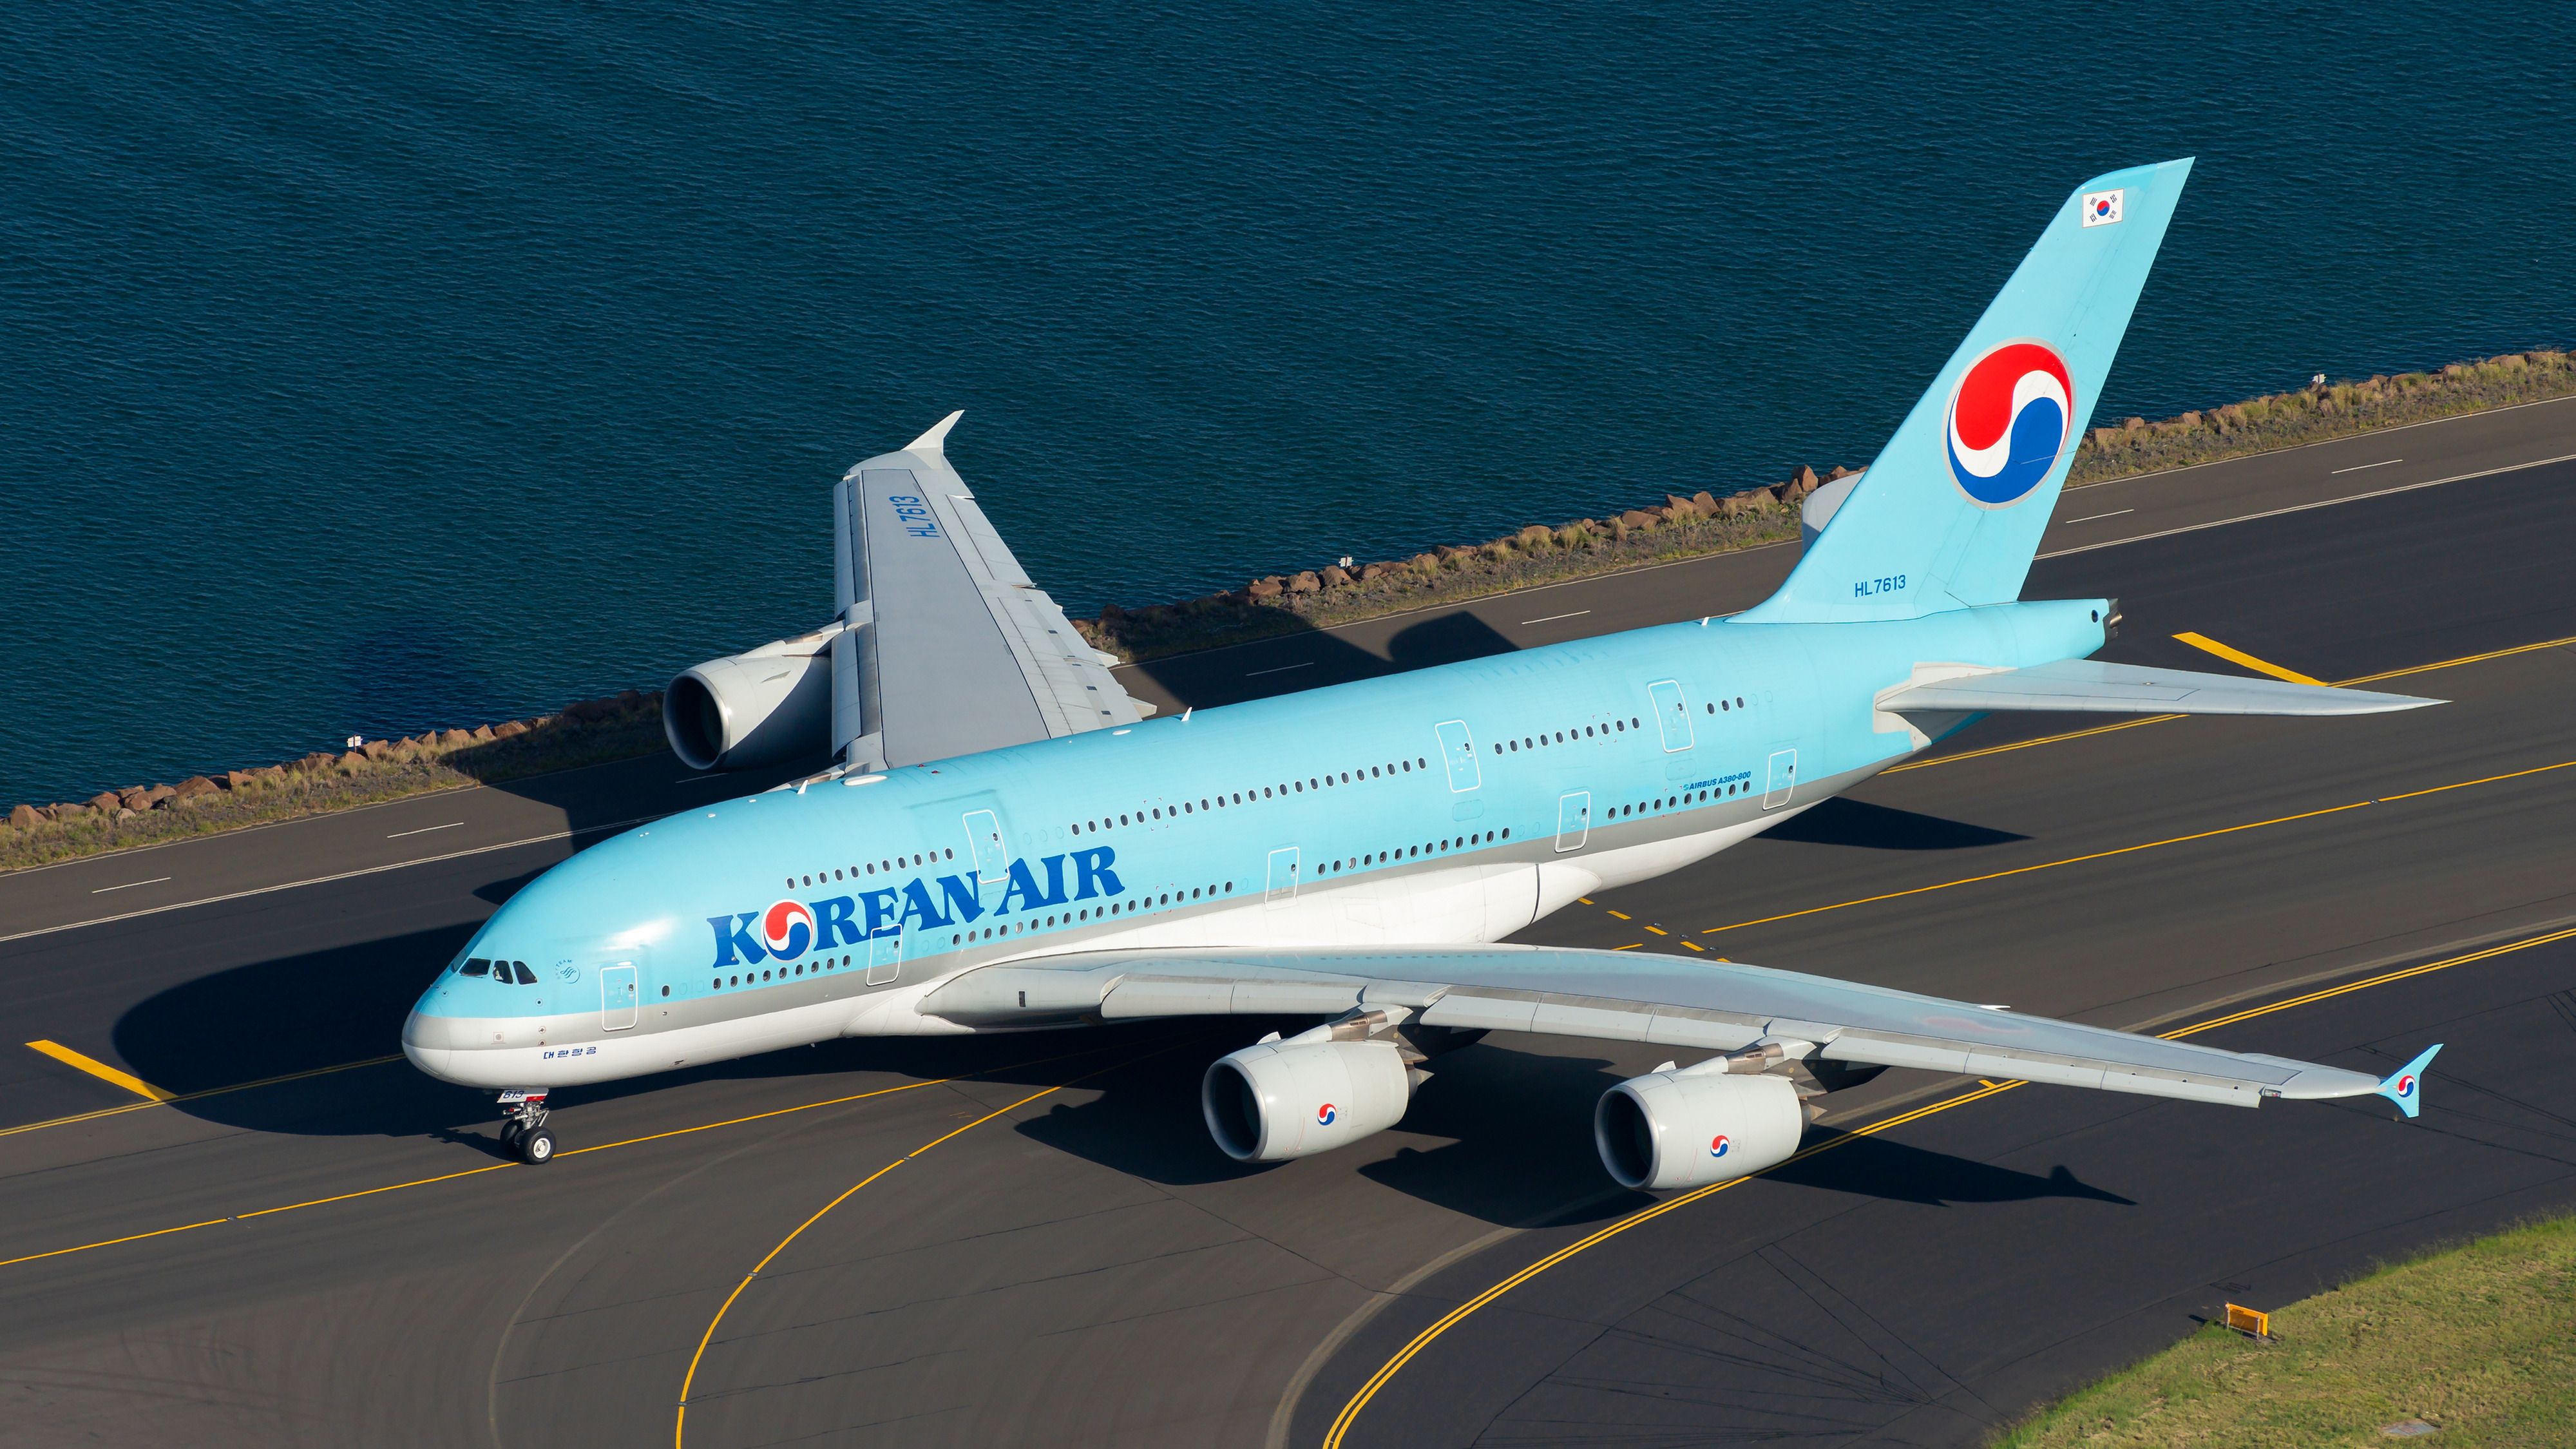 A Korean Air Airbus A380